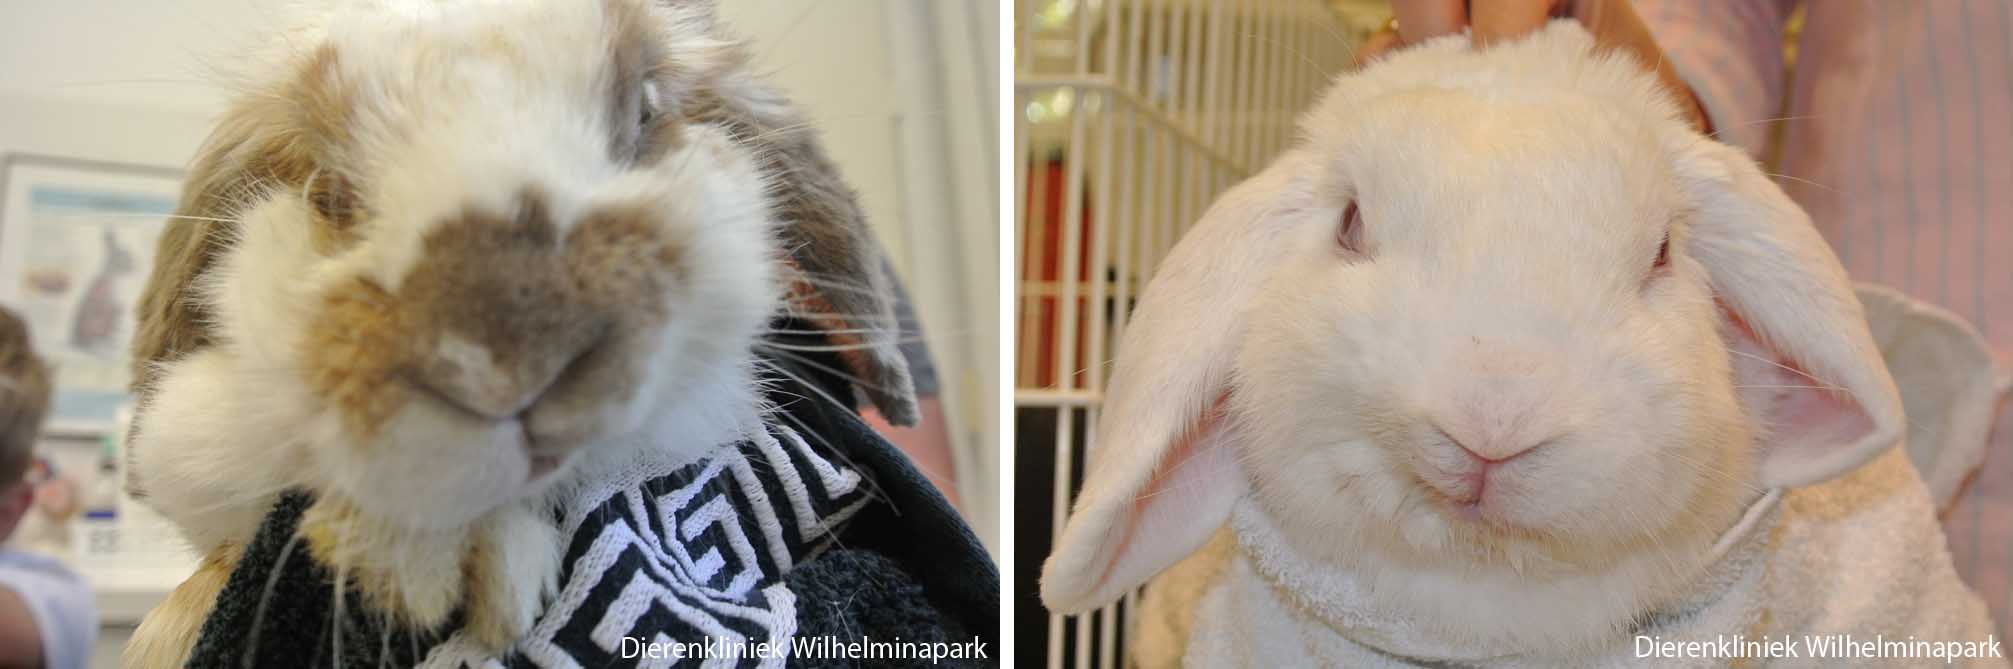 Een konijn met een asymmetrische kop ten gevolge van een facialis paralyse